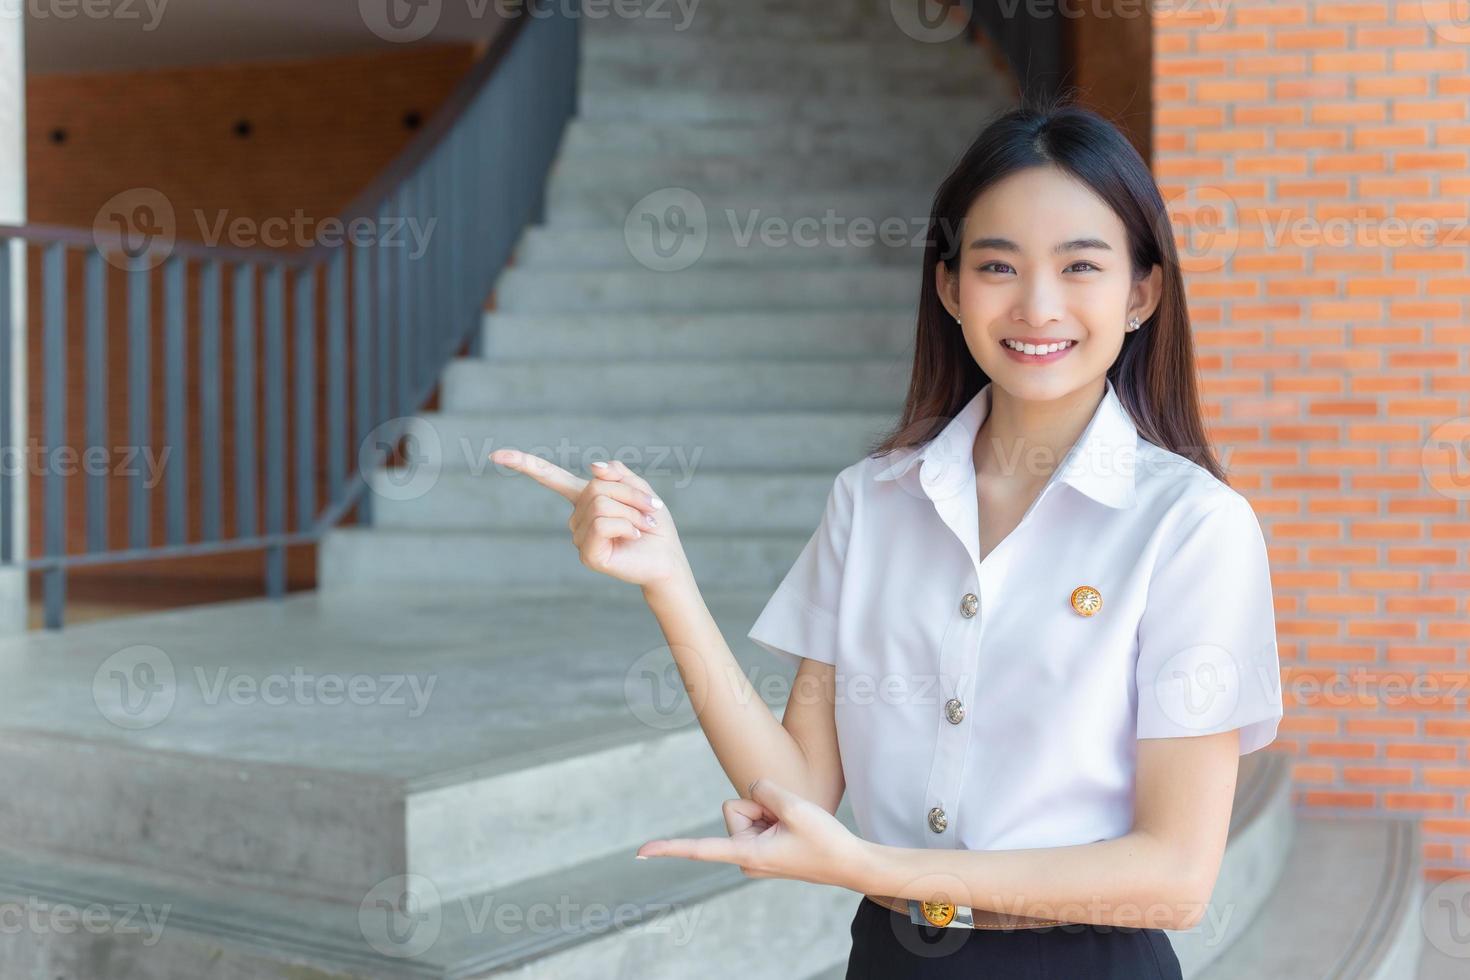 jolie jeune étudiante asiatique sourit et regarde la caméra debout pour présenter quelque chose en toute confiance dans le contexte universitaire. photo